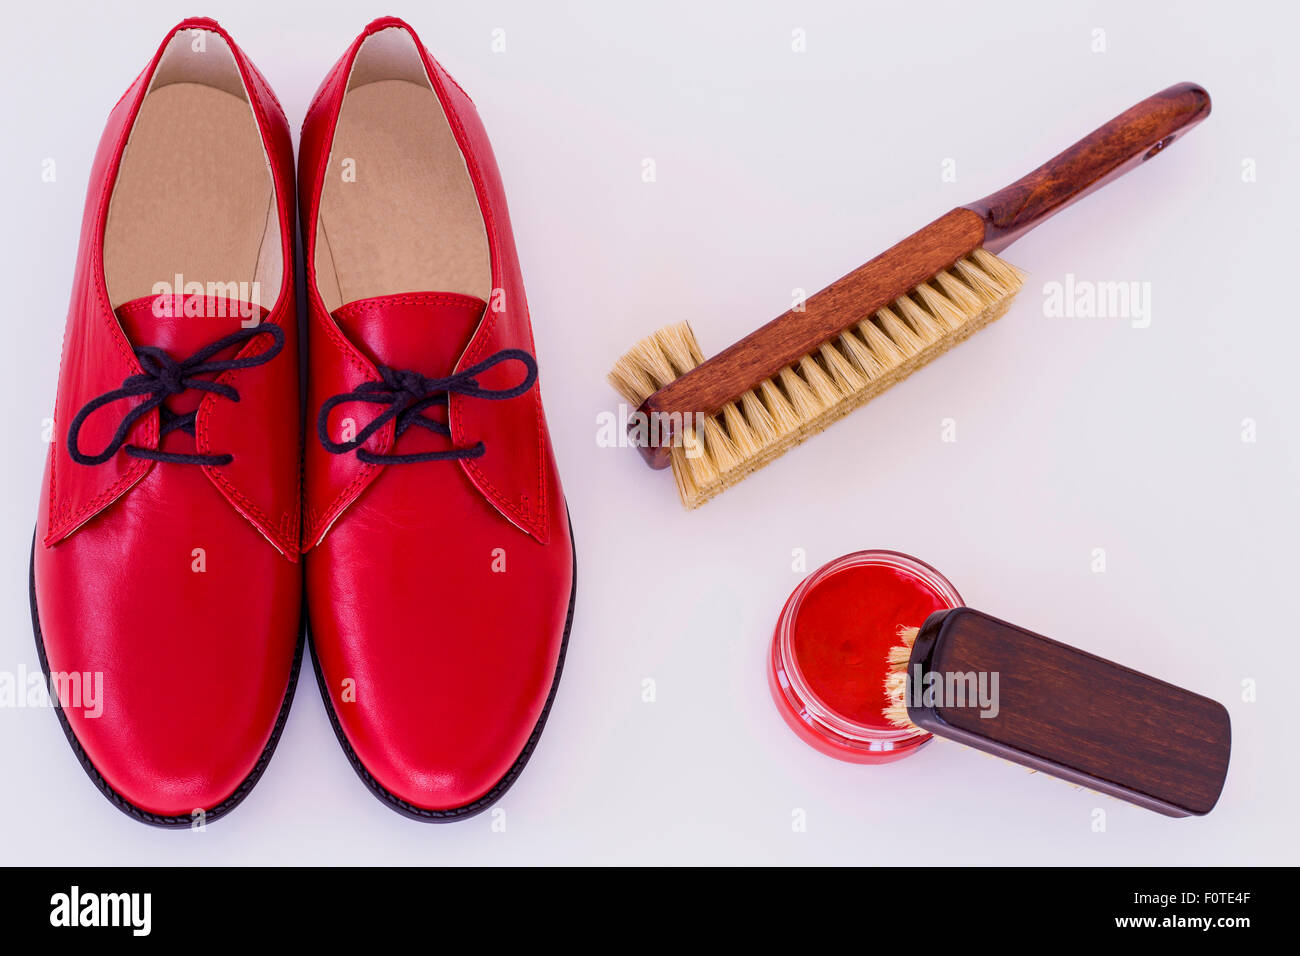 Isolato red shoes e mezzi sulla cura delle calzature - scarpa-polacco e spazzola Foto Stock